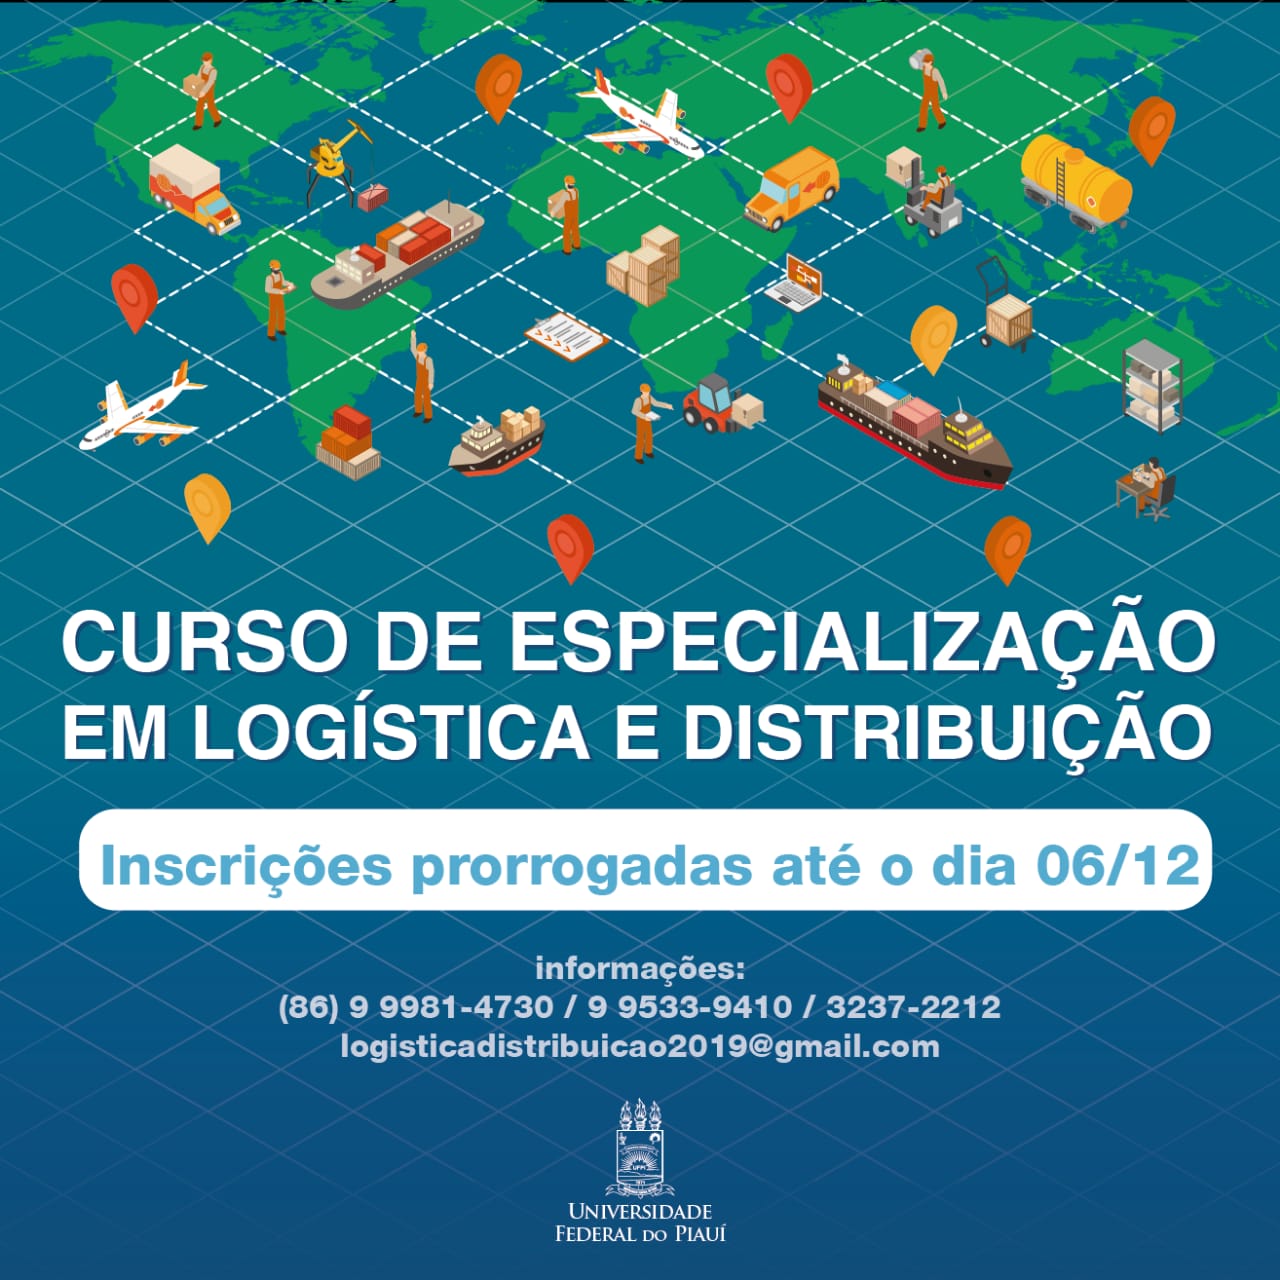 logistica e distribuicao logo20191121150032